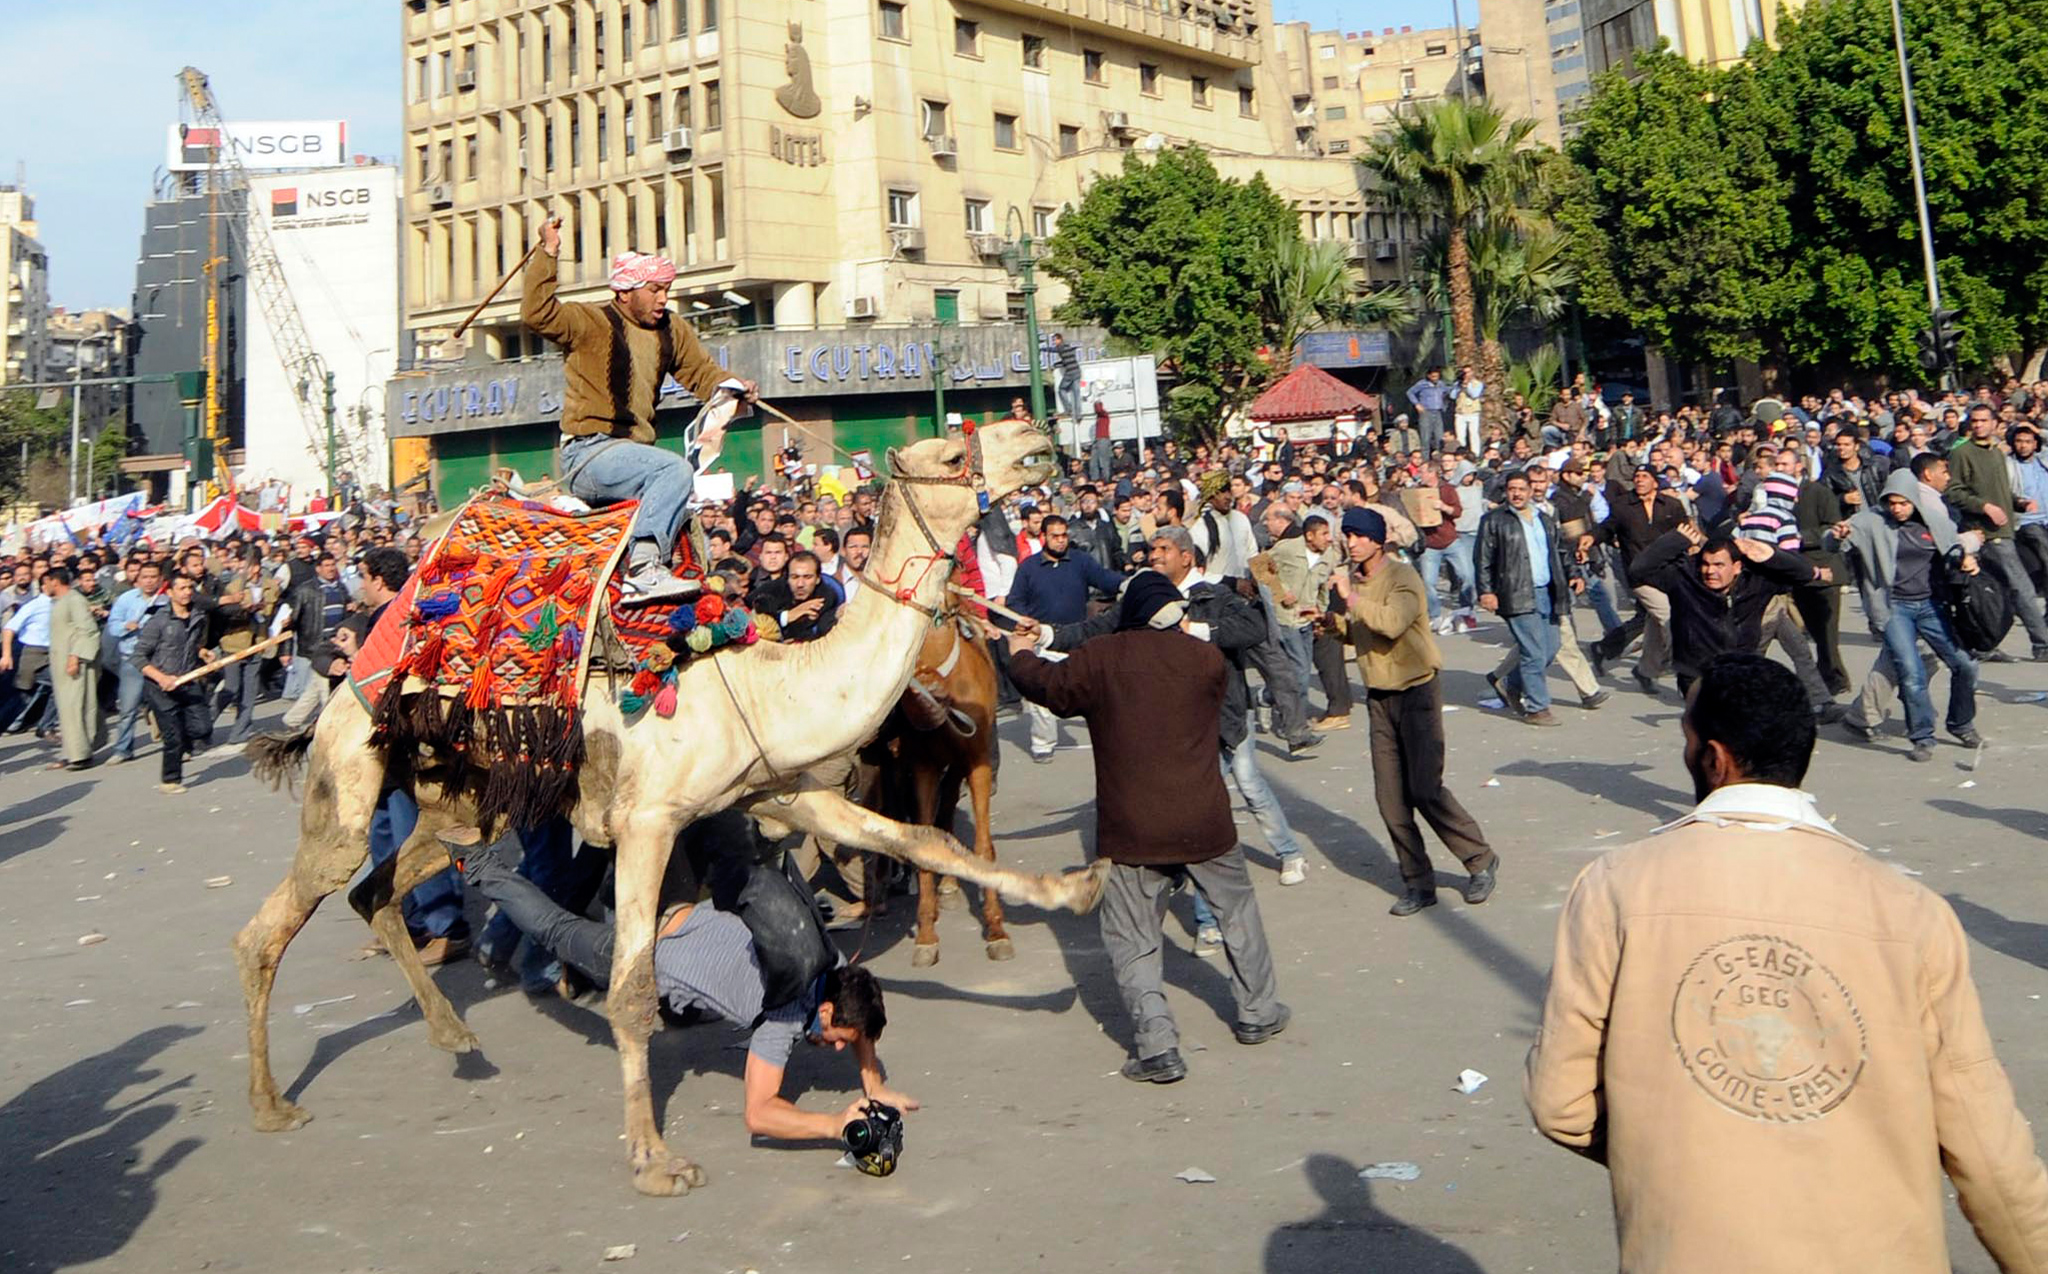 Une bataille rangée oppose les deux camps jusqu'à tard dans la nuit. Outre des pierres, des bâtons et des cocktails Molotov, des chameaux sont utilisés <br>par les partisans du pouvoir pour tenter de chasser les manifestants de la Place Tahrir.
(Crédit photo : Mehdi Chebil)
